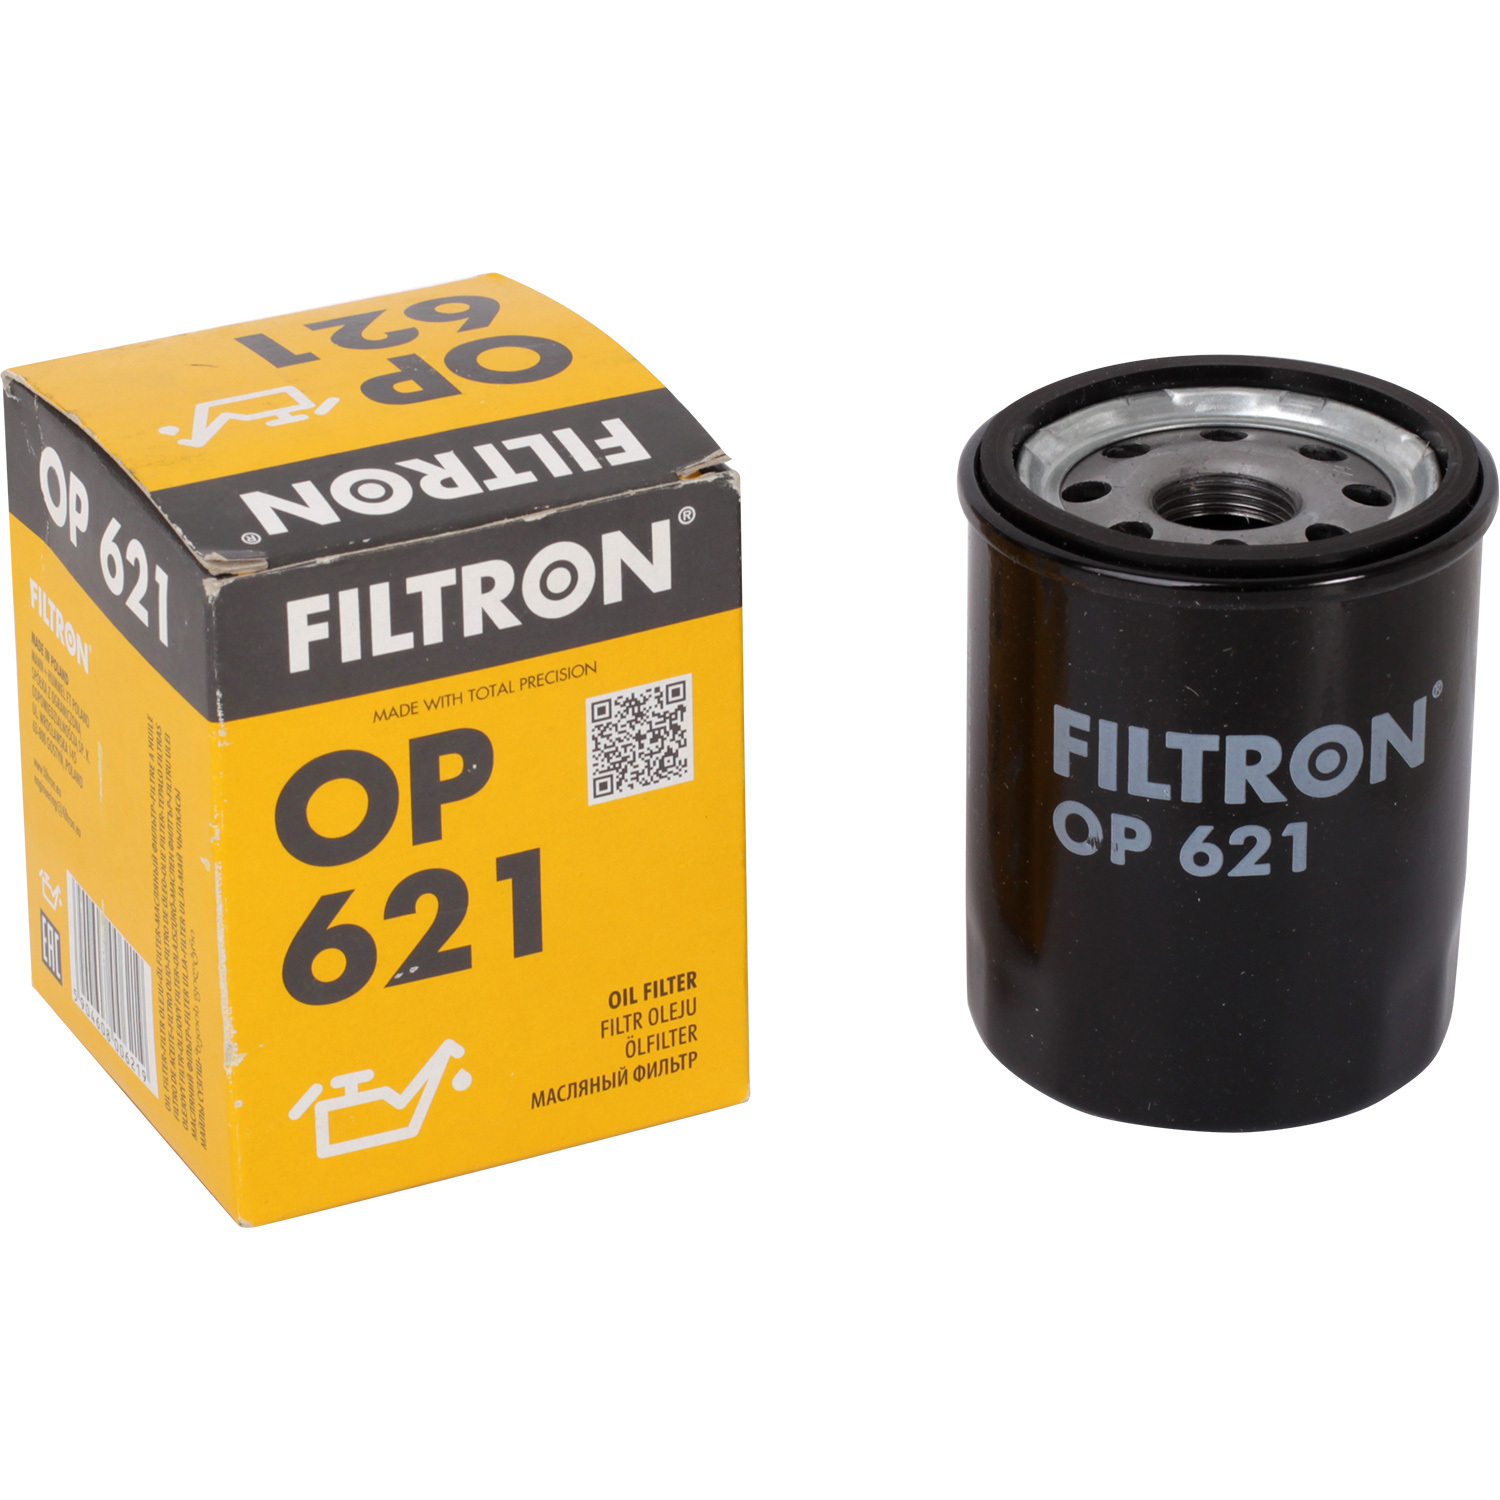 Фильтры Filtron Фильтр масляный Filtron OP621 фильтры filtron фильтр масляный filtron oe6856